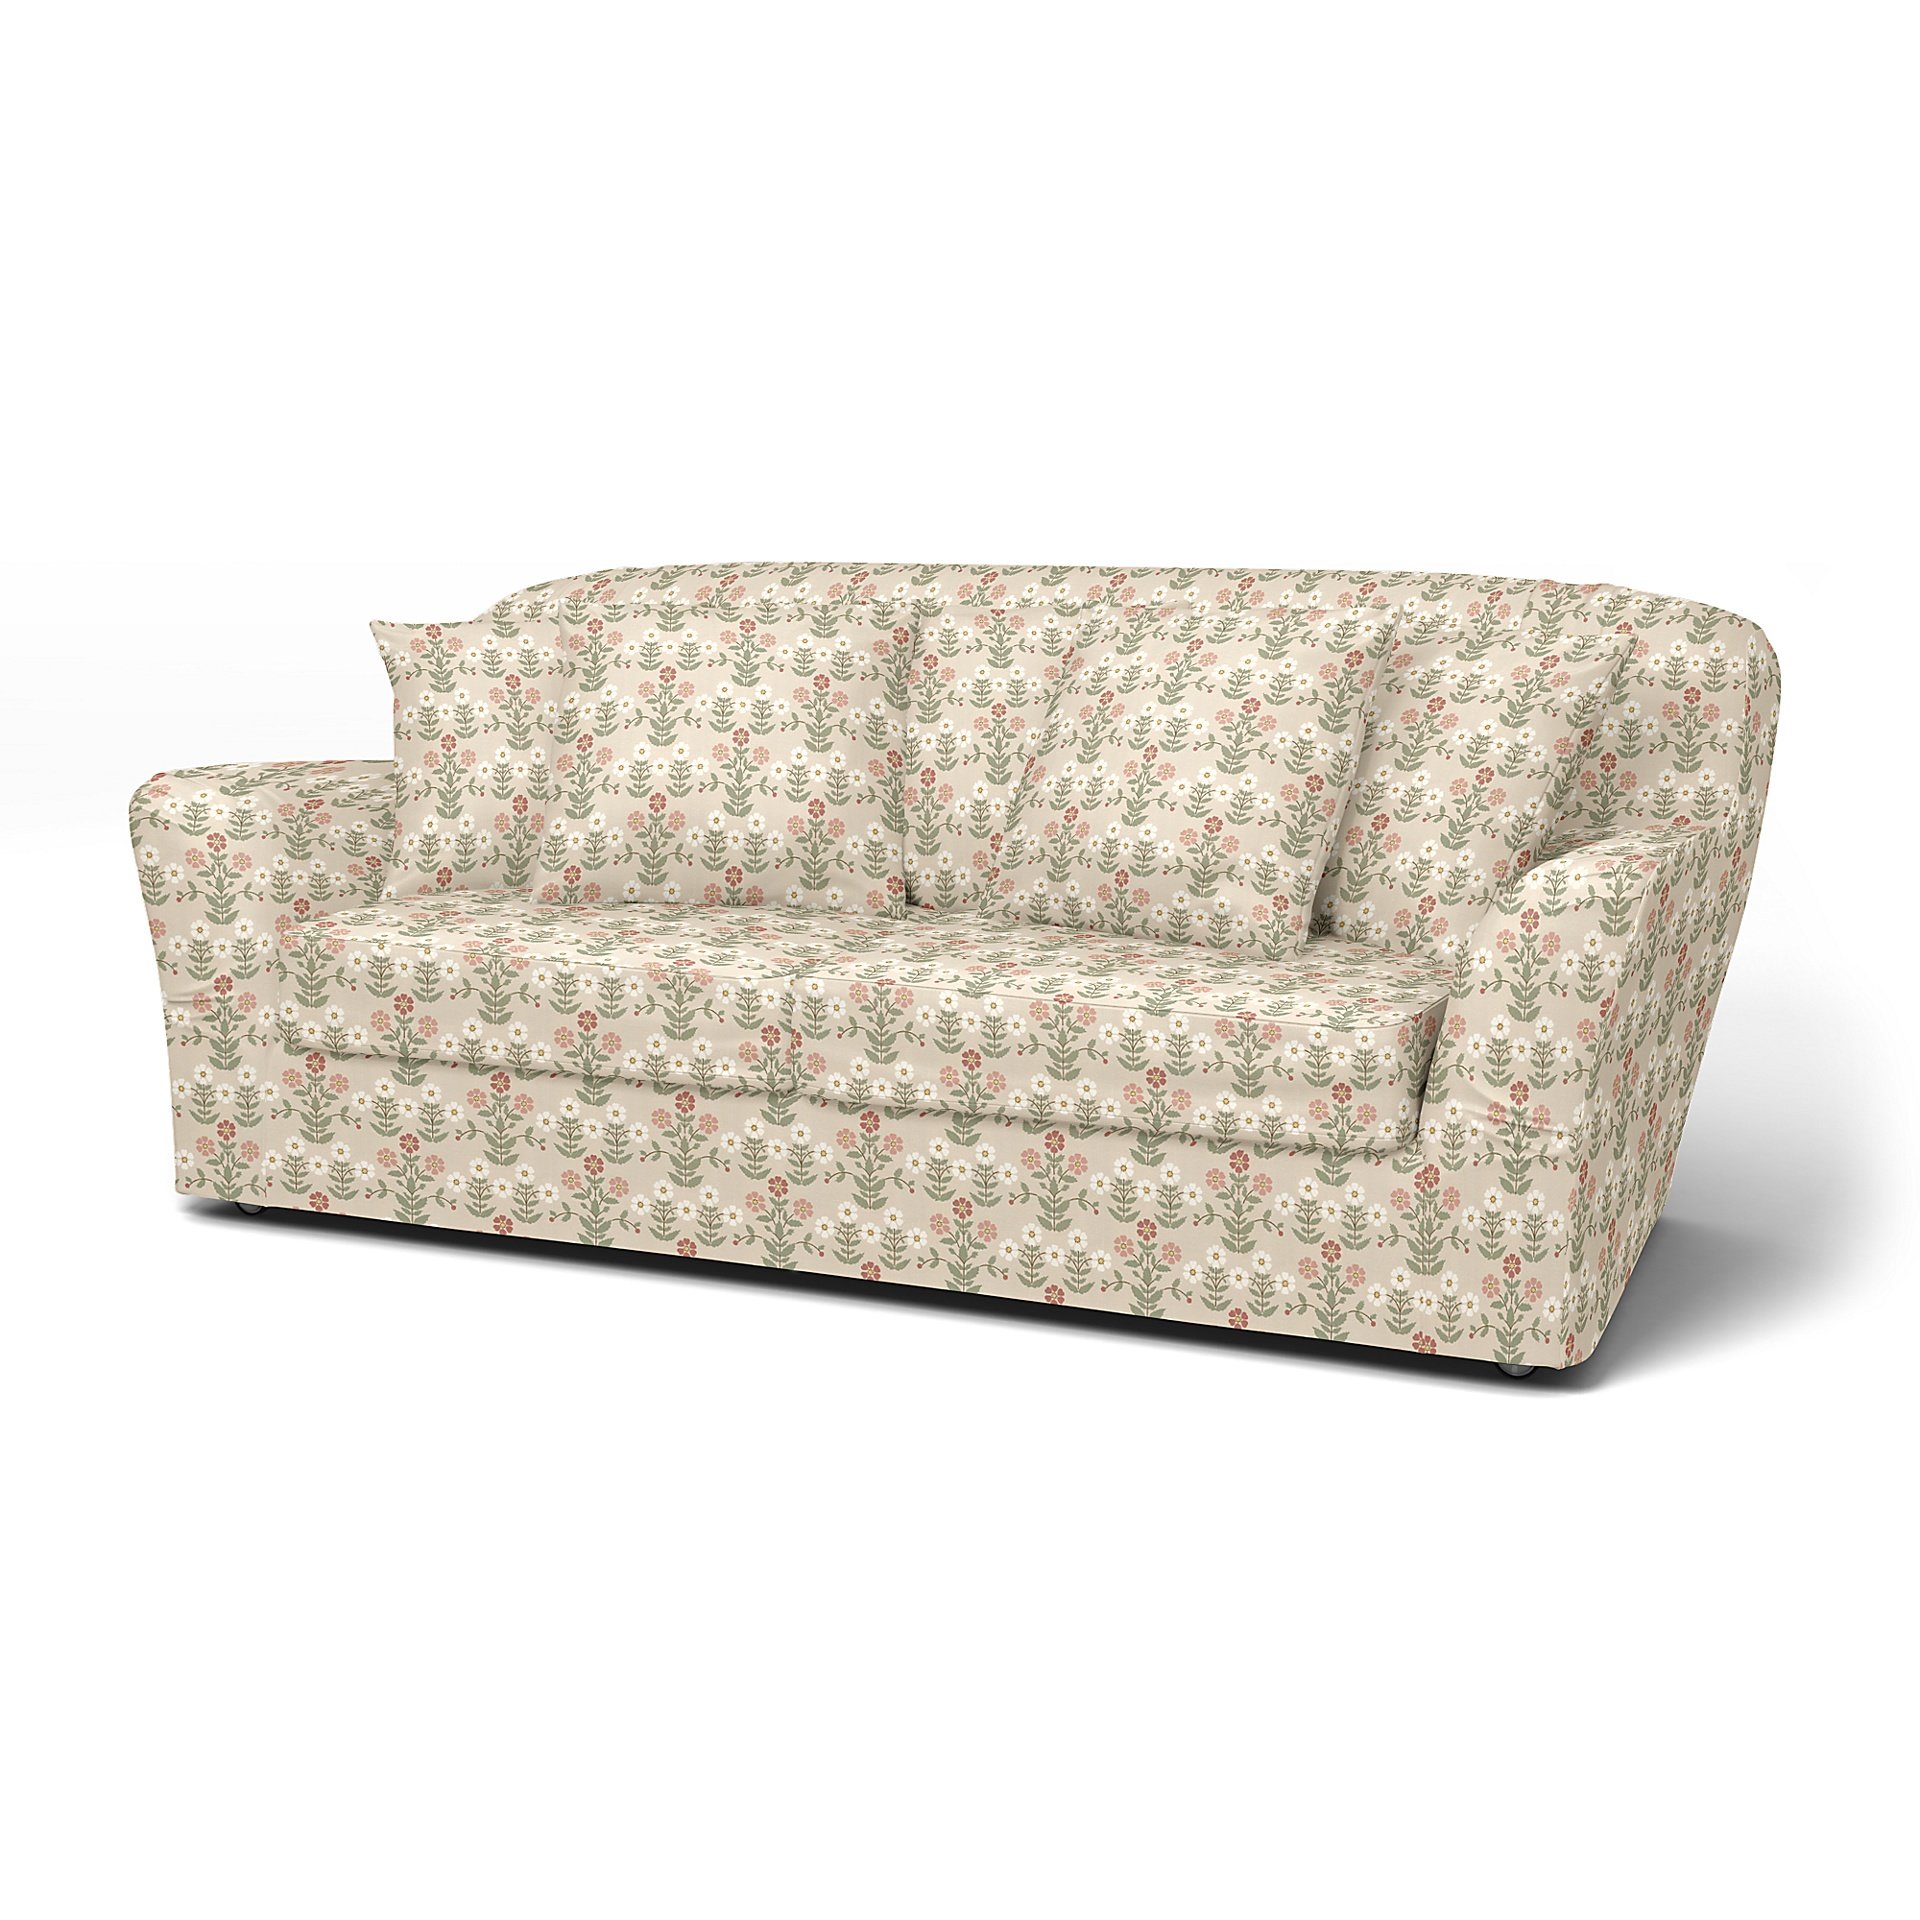 IKEA - Tomelilla sofa bed (Standard model), Pink Sippor, BEMZ x BORASTAPETER COLLECTION - Bemz